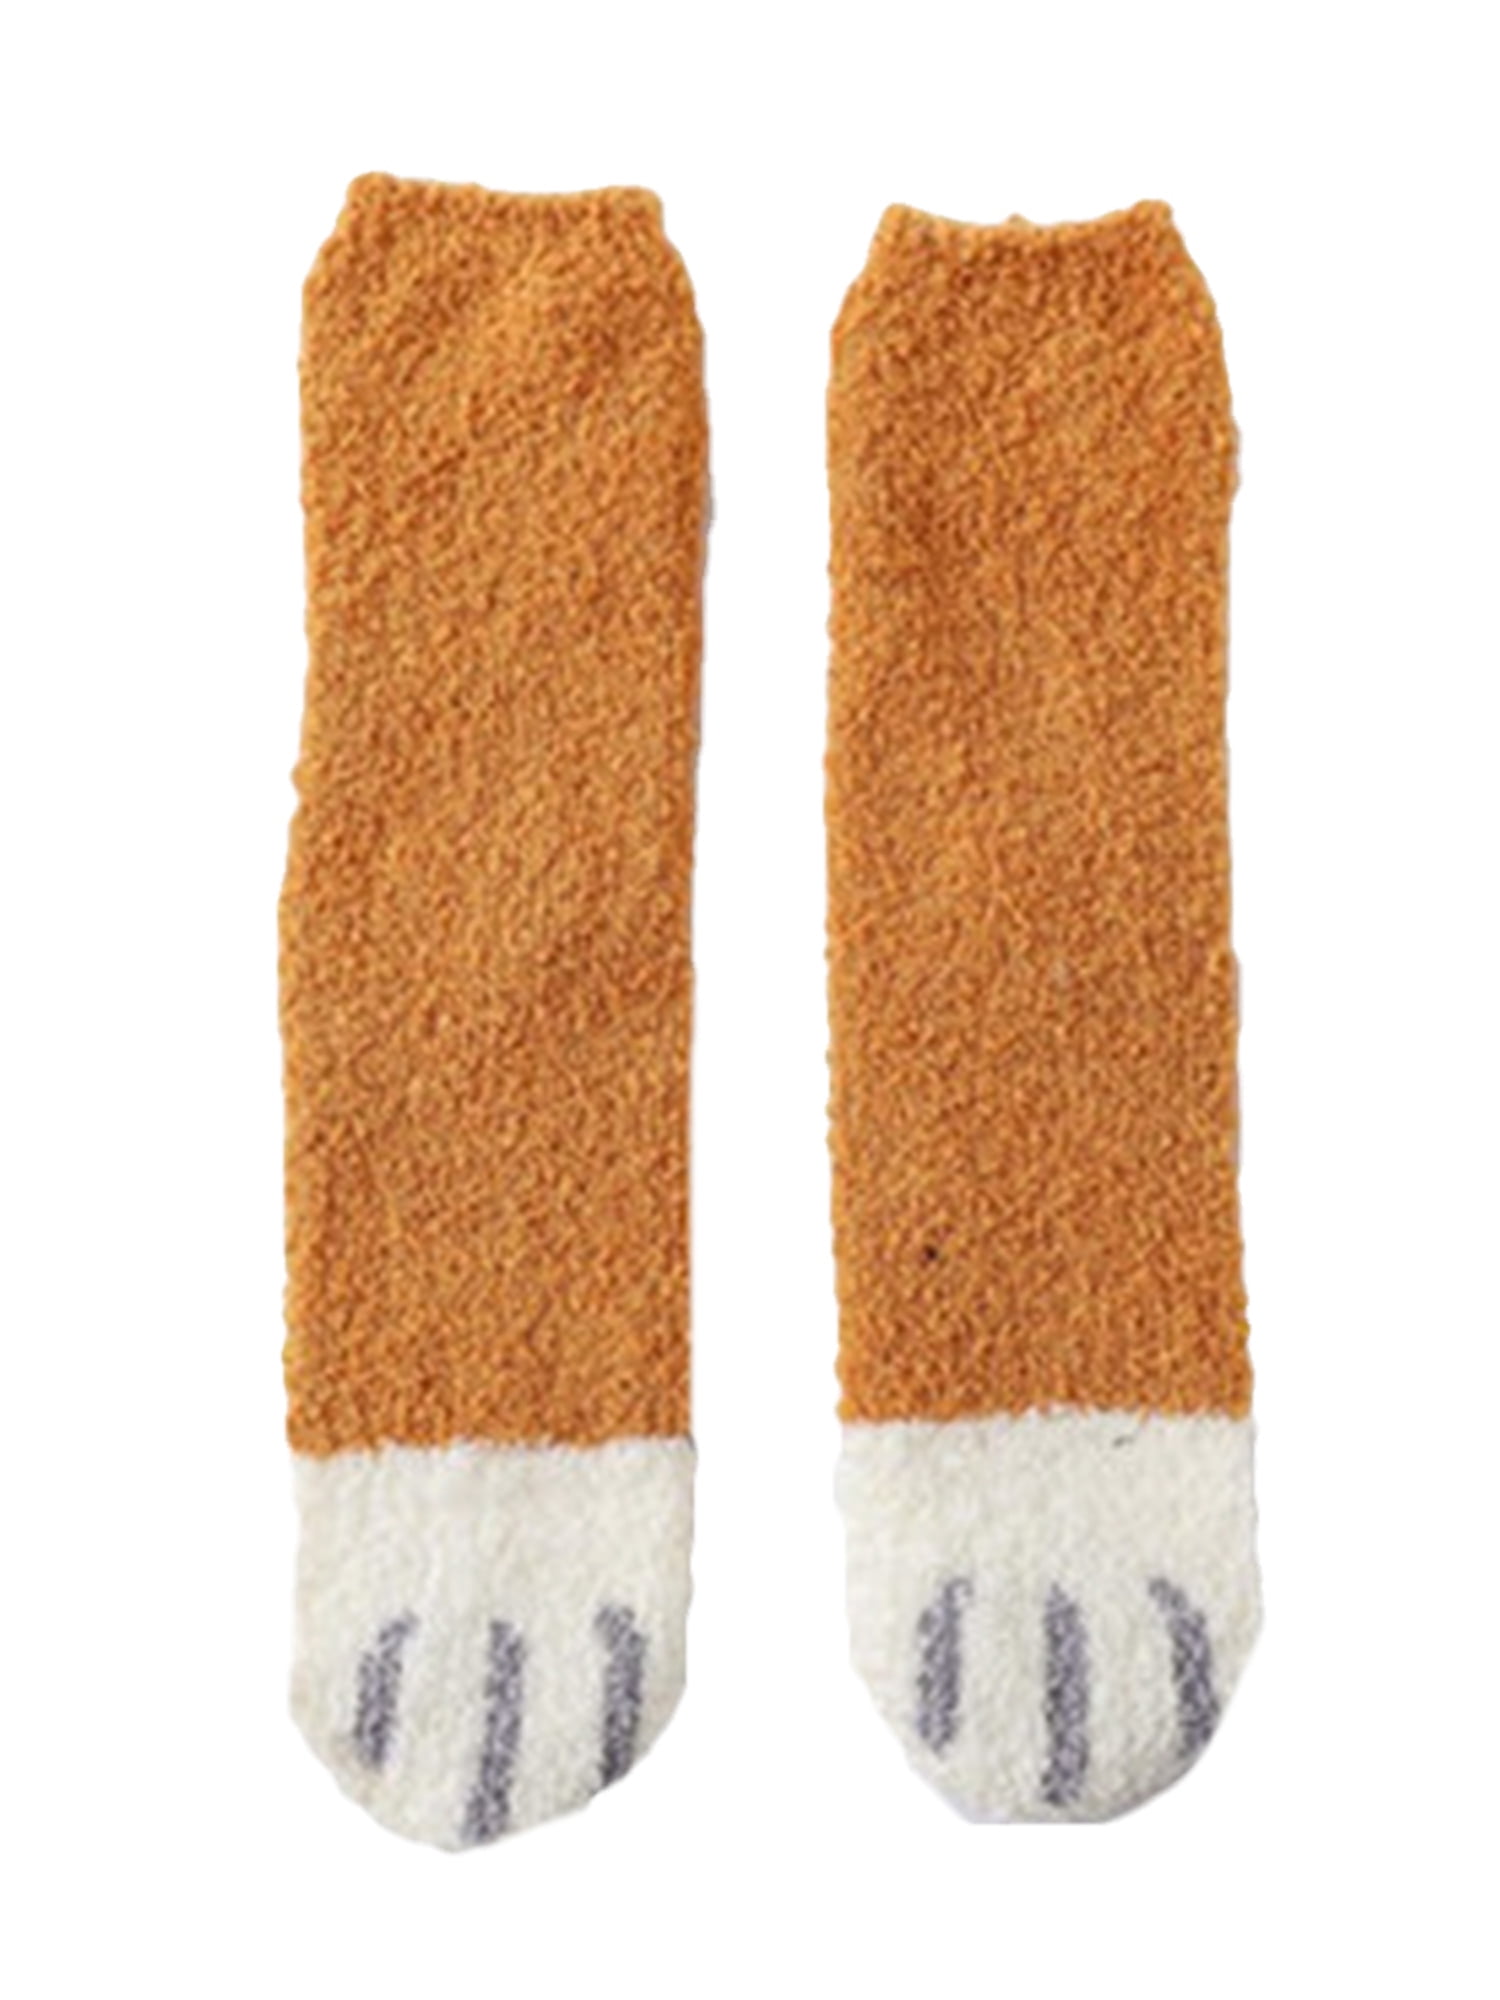 Dewadbow Women Cat Claws Socks Warm Sleep Floor Socks Plush Fleece ...